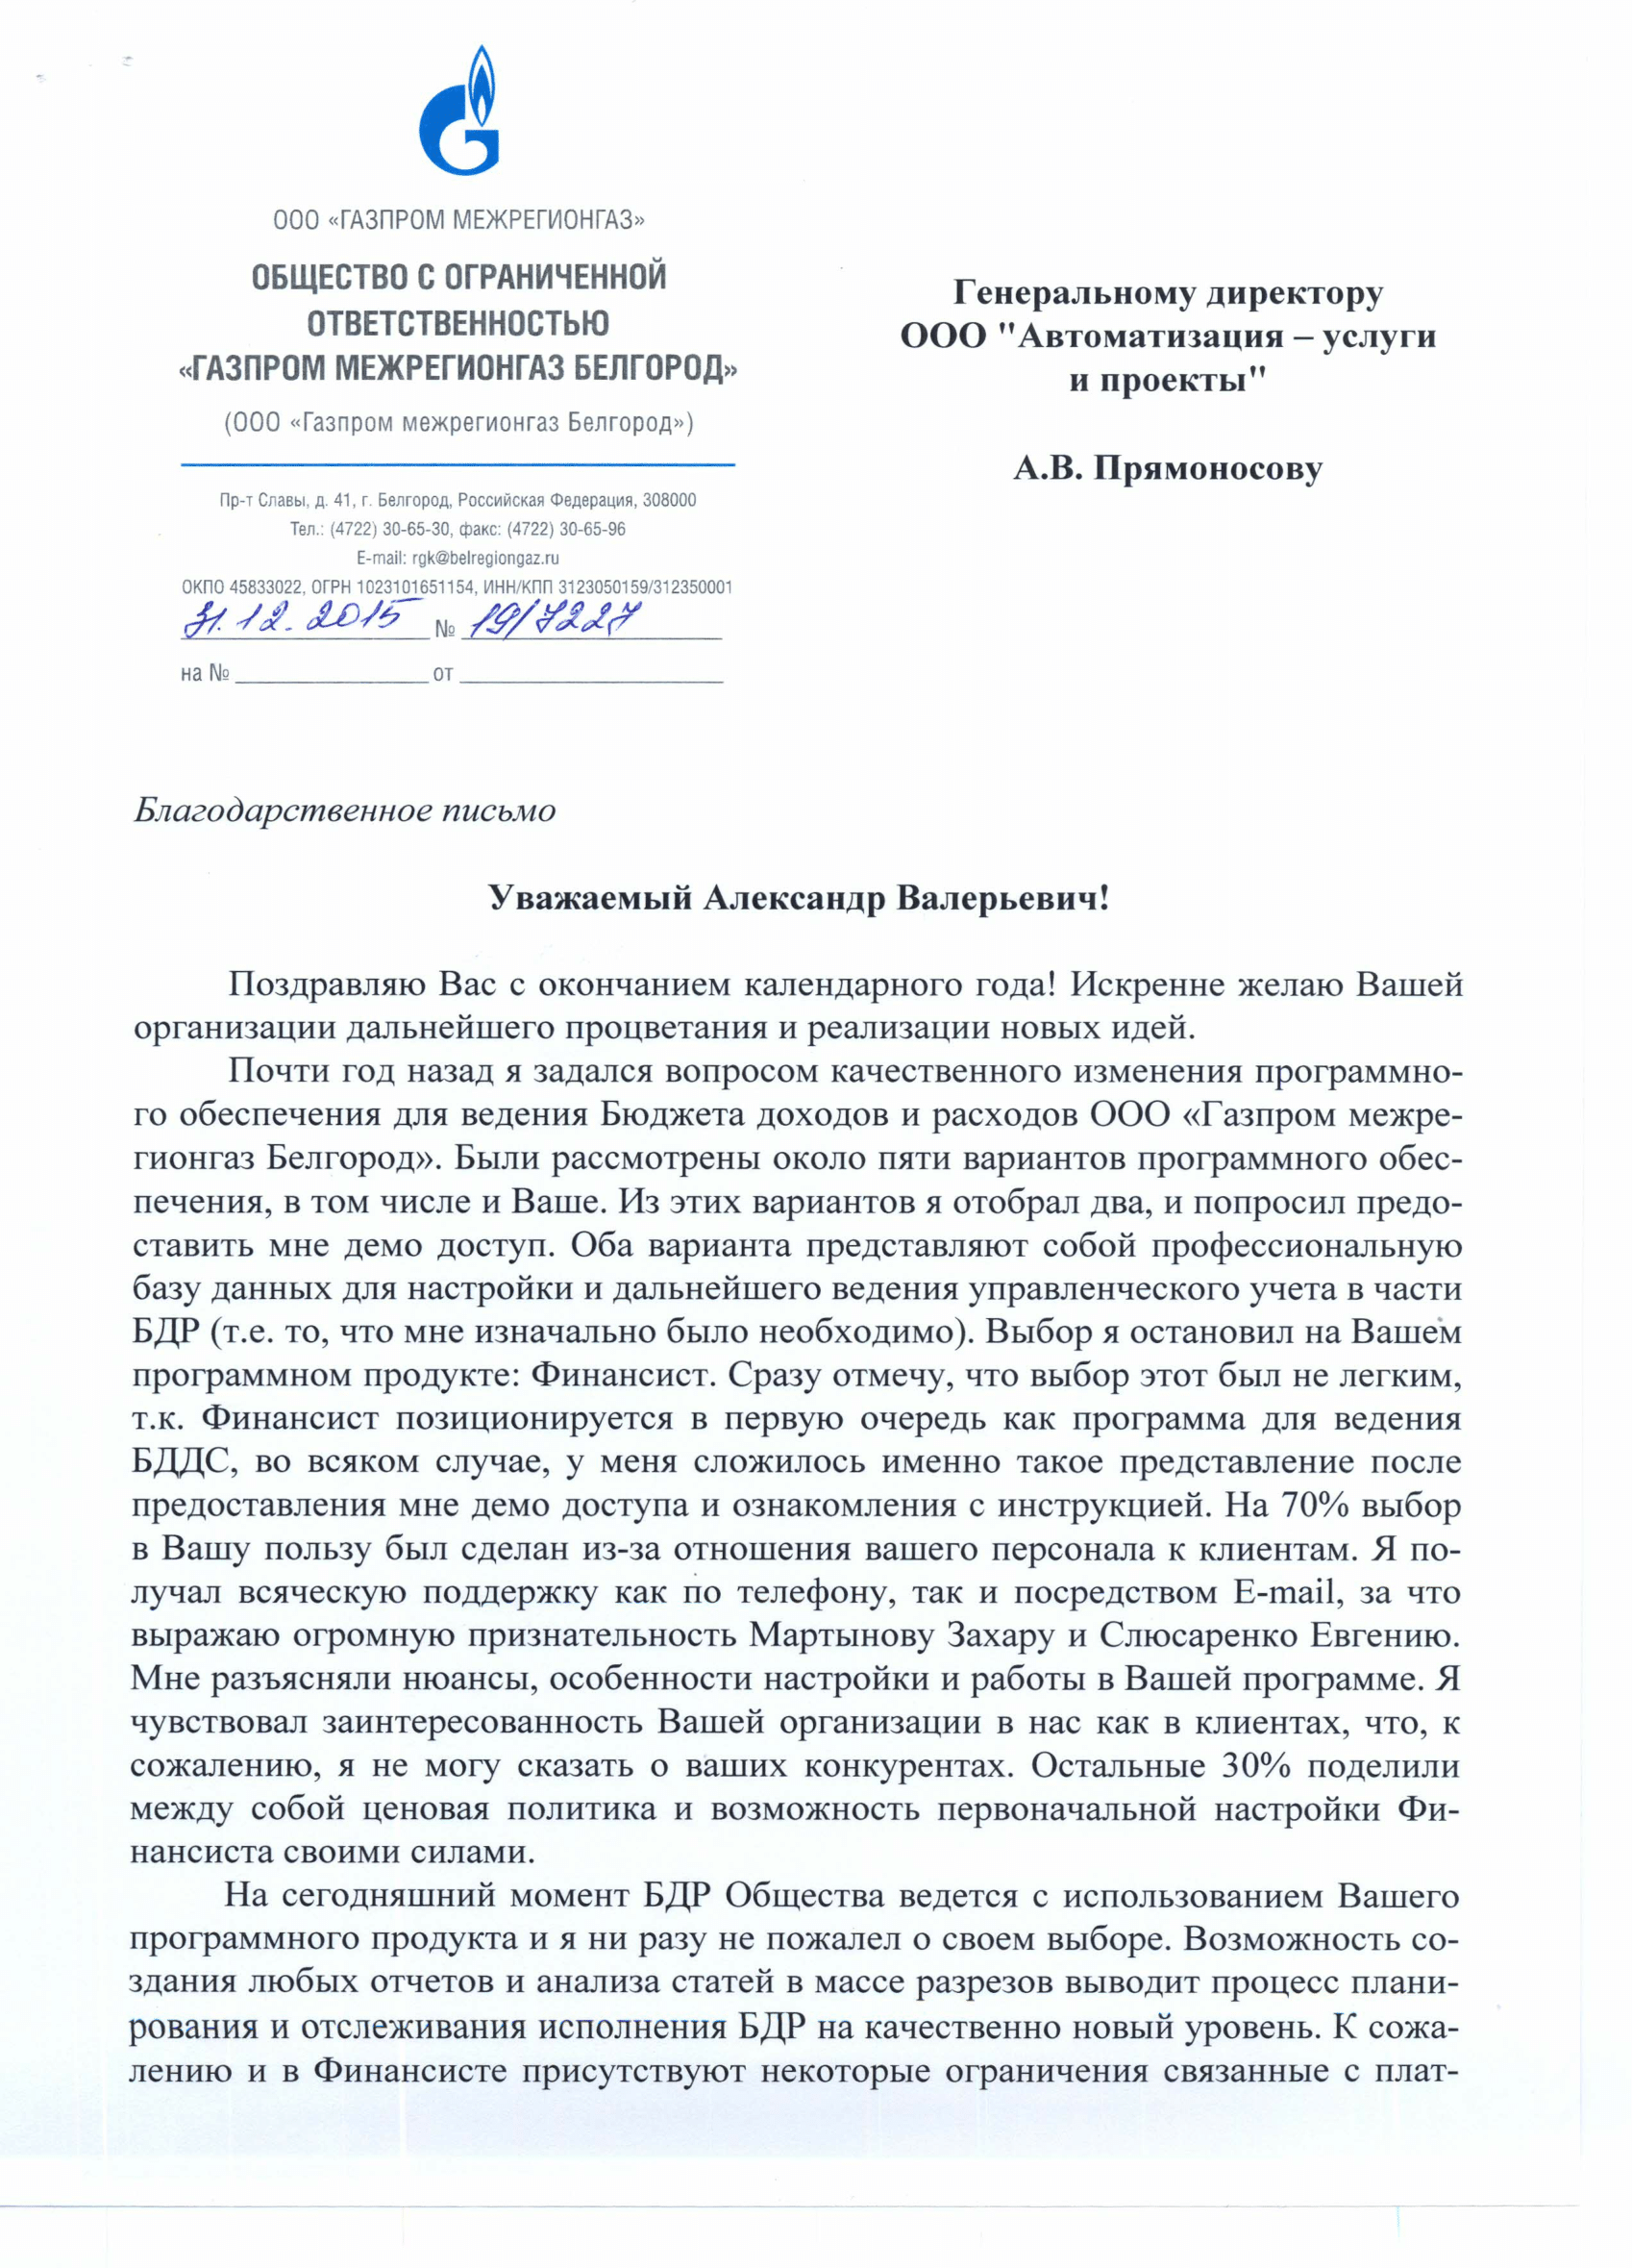 Газпром межрегионгаз Белгород отзыв